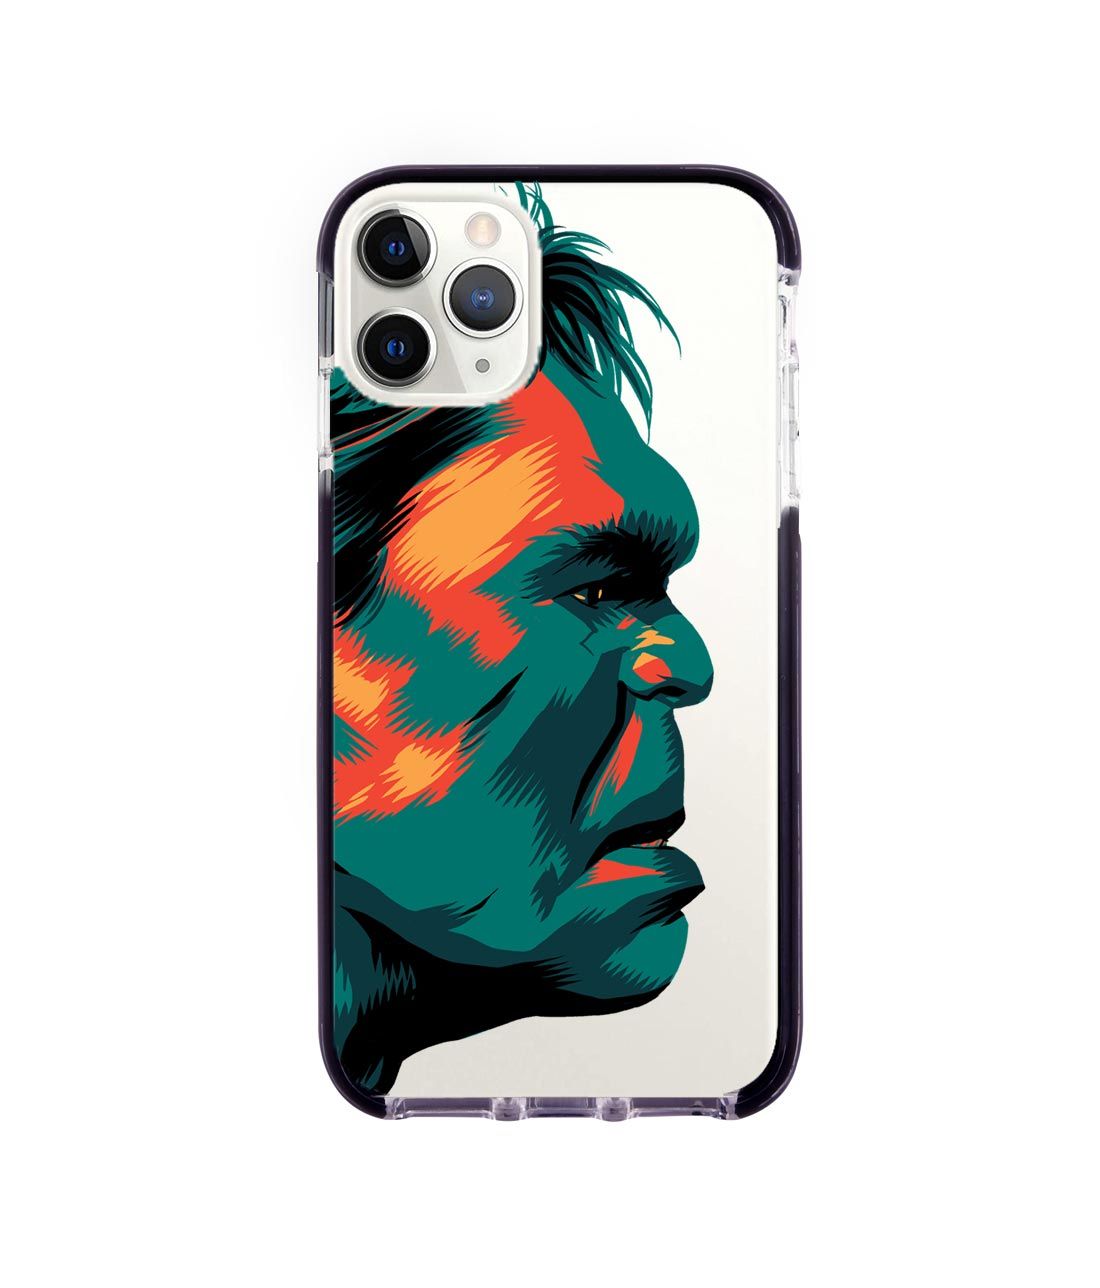 Illuminated Hulk - Extreme Phone Case for iPhone 11 Pro